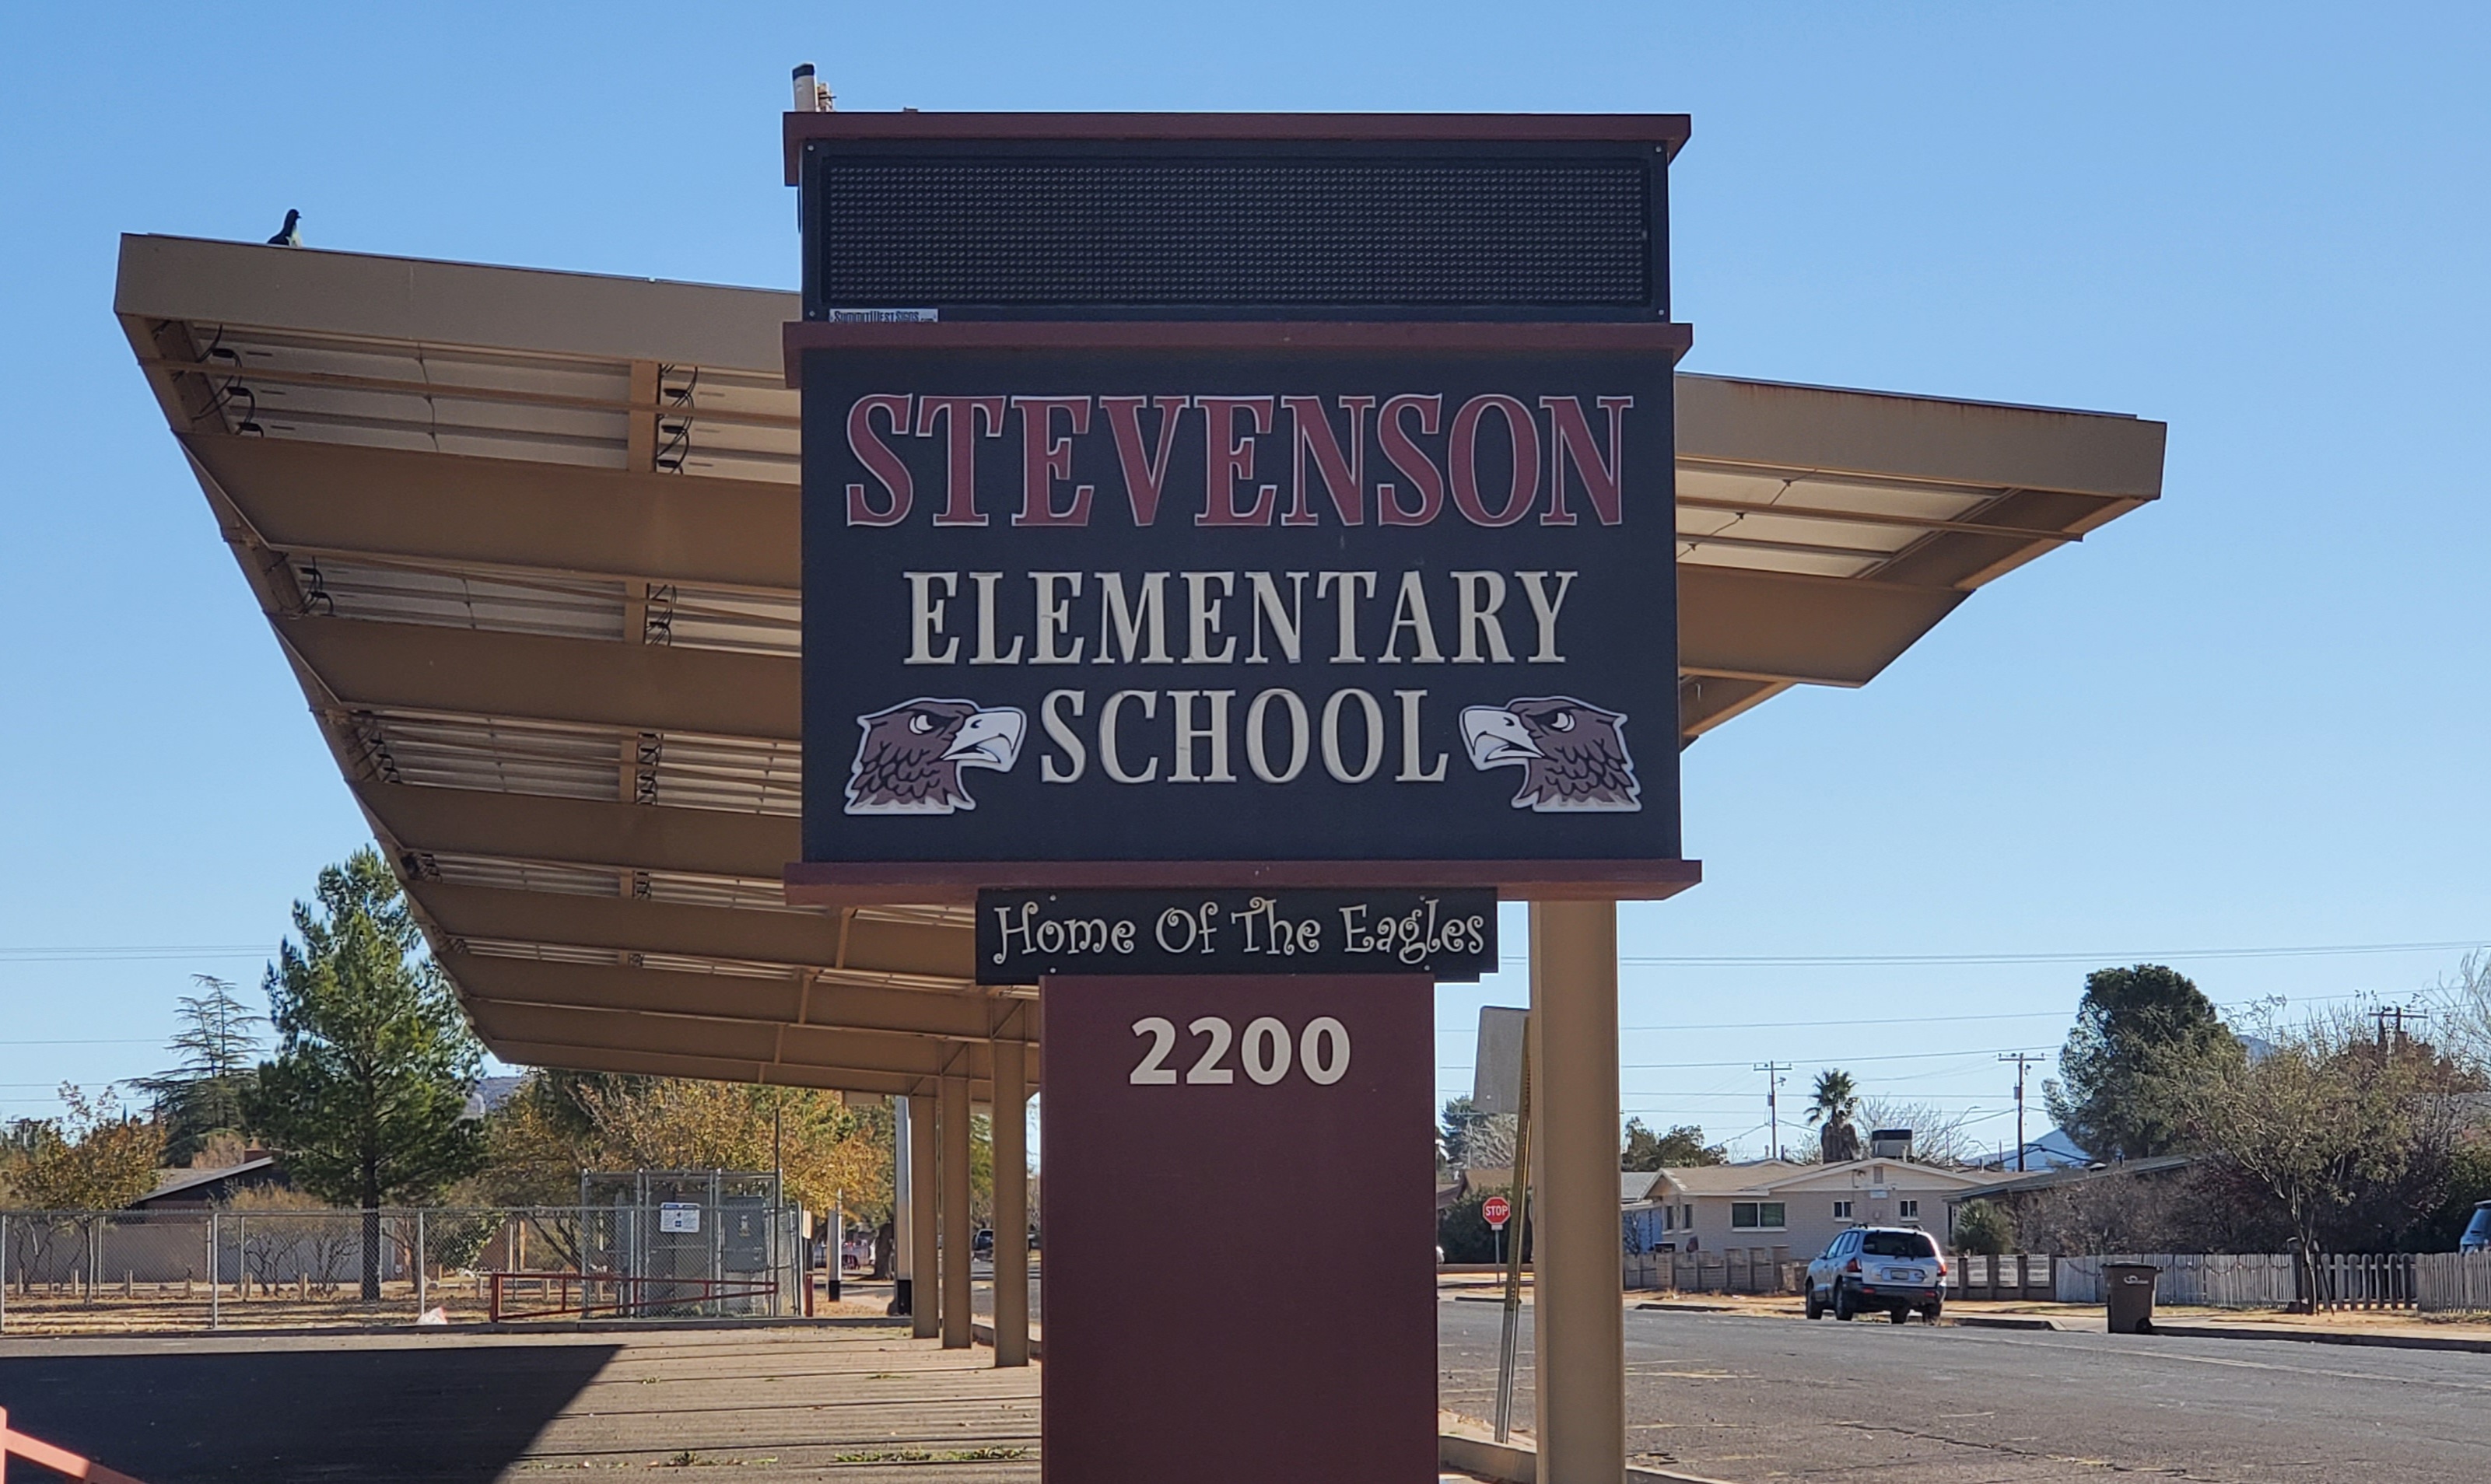 Stevenson Elementary School